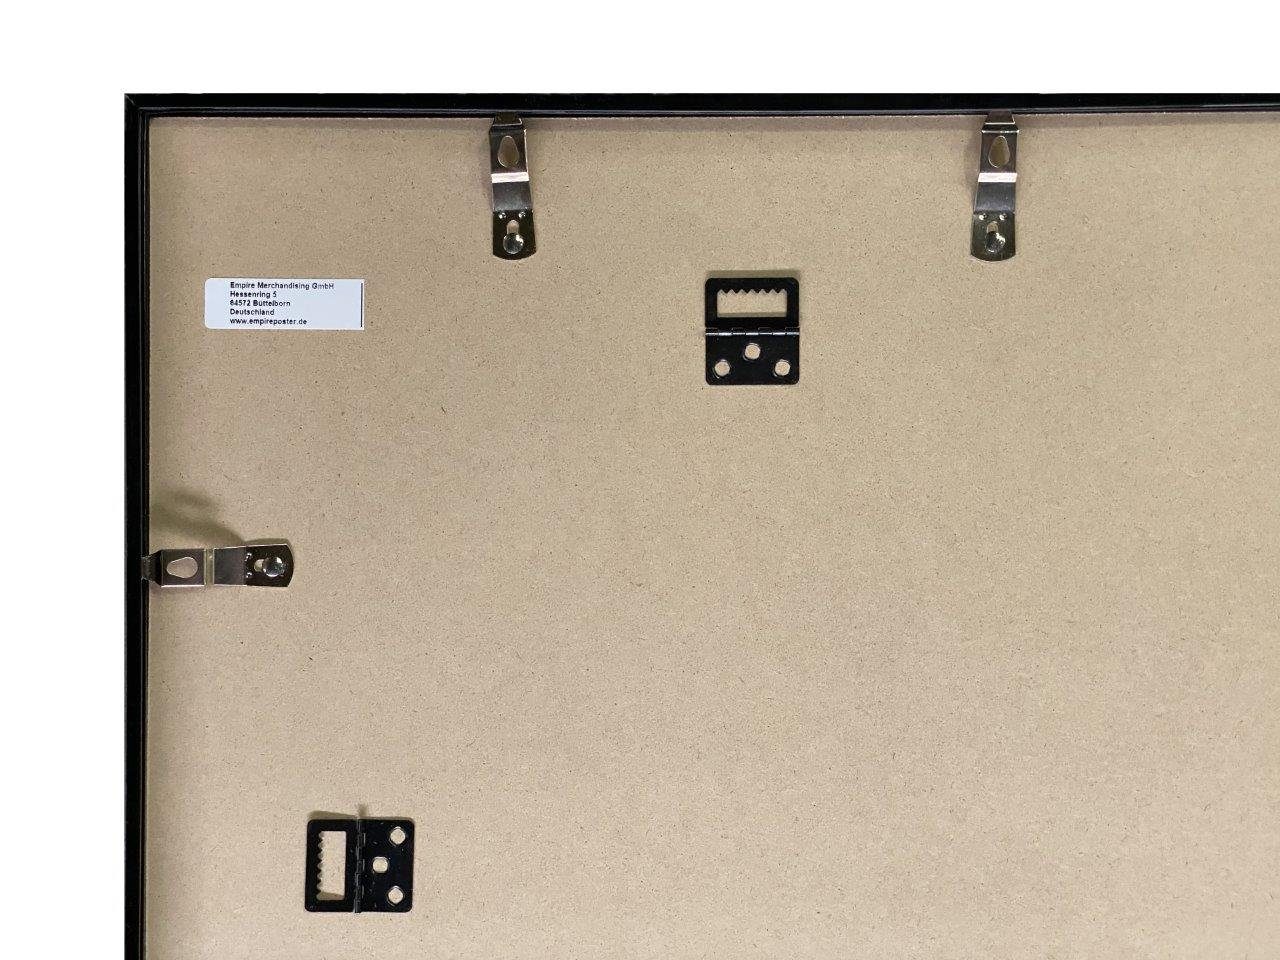 Profil: Kunststoff Acryl-Scheibe Wechselrahmen mit orange Posterrahmen Rahmen Maxi-Poster 15mm Farbe empireposter Shinsuke® 61x91,5cm,